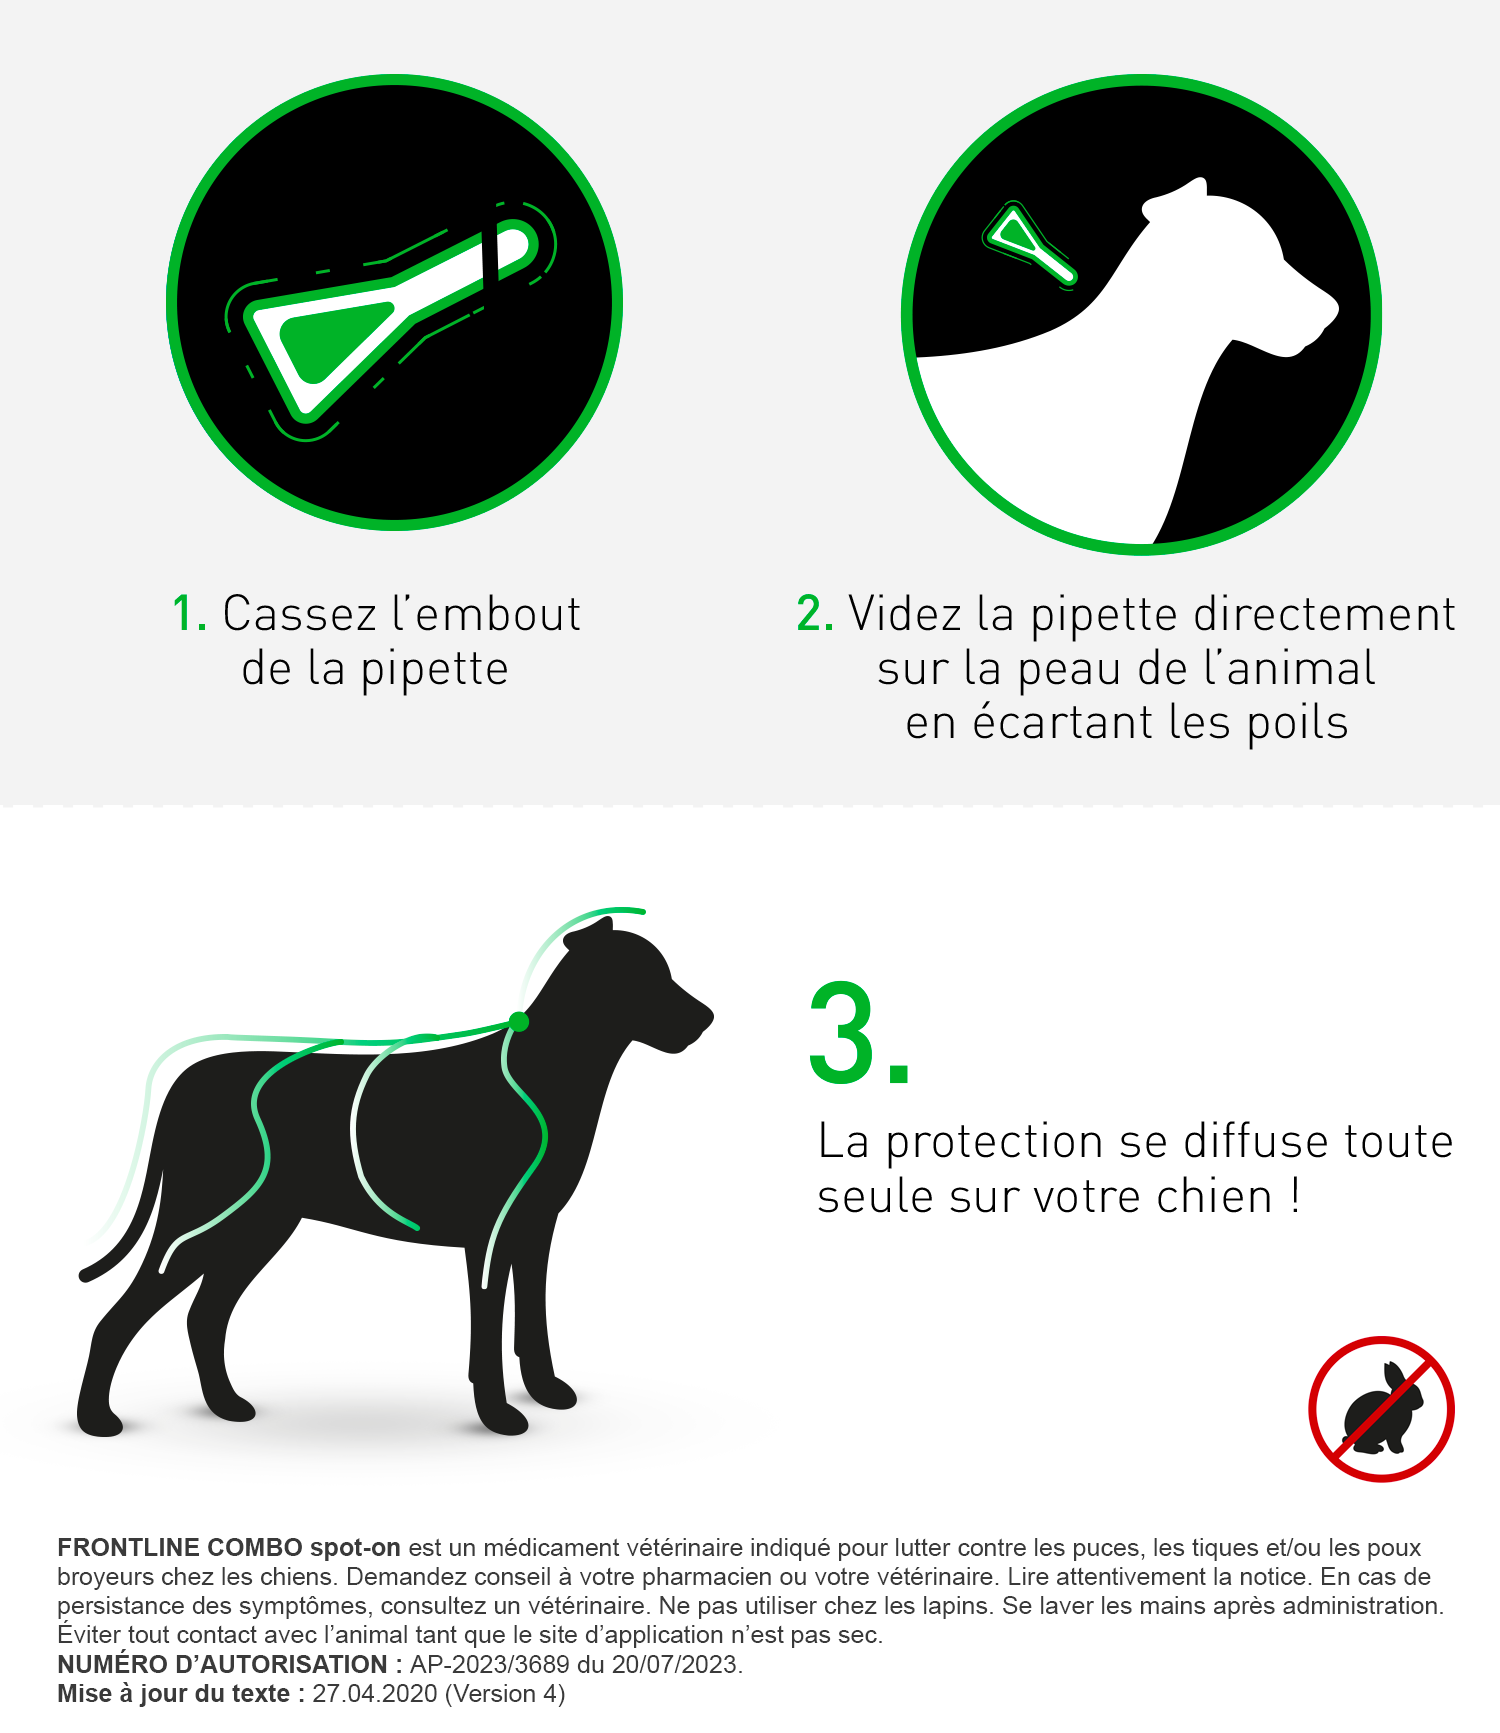 Frontline Combo pour chien de 2 à 10kg 4 pipettes (S) | VETOBEST